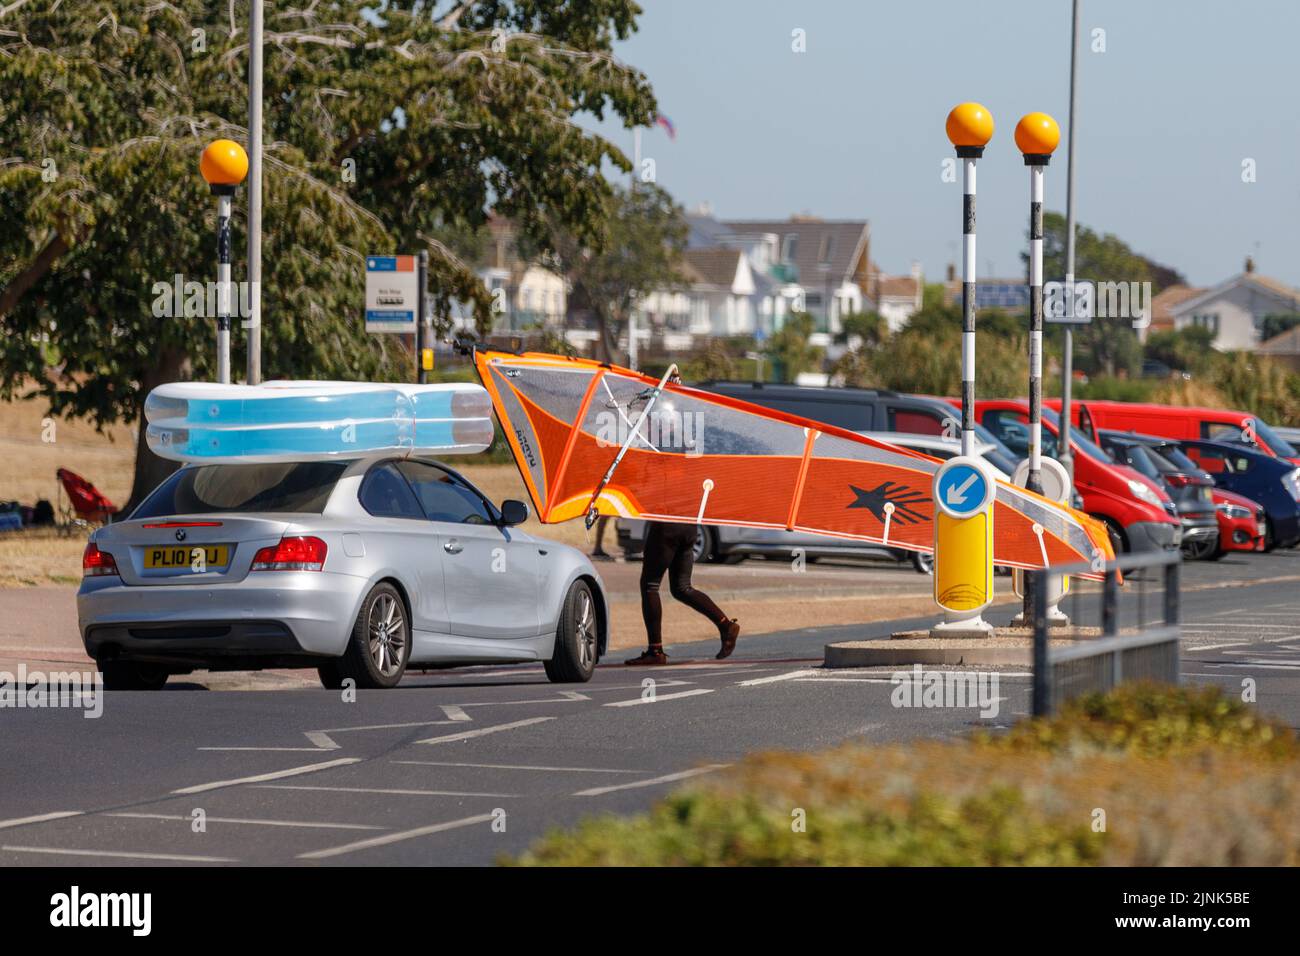 An einem sonnigen Tag wartet ein Auto auf einen Mann mit Windsurfsegel, der an einer Fußgängerüberfahrt die Straße überquert Stockfoto